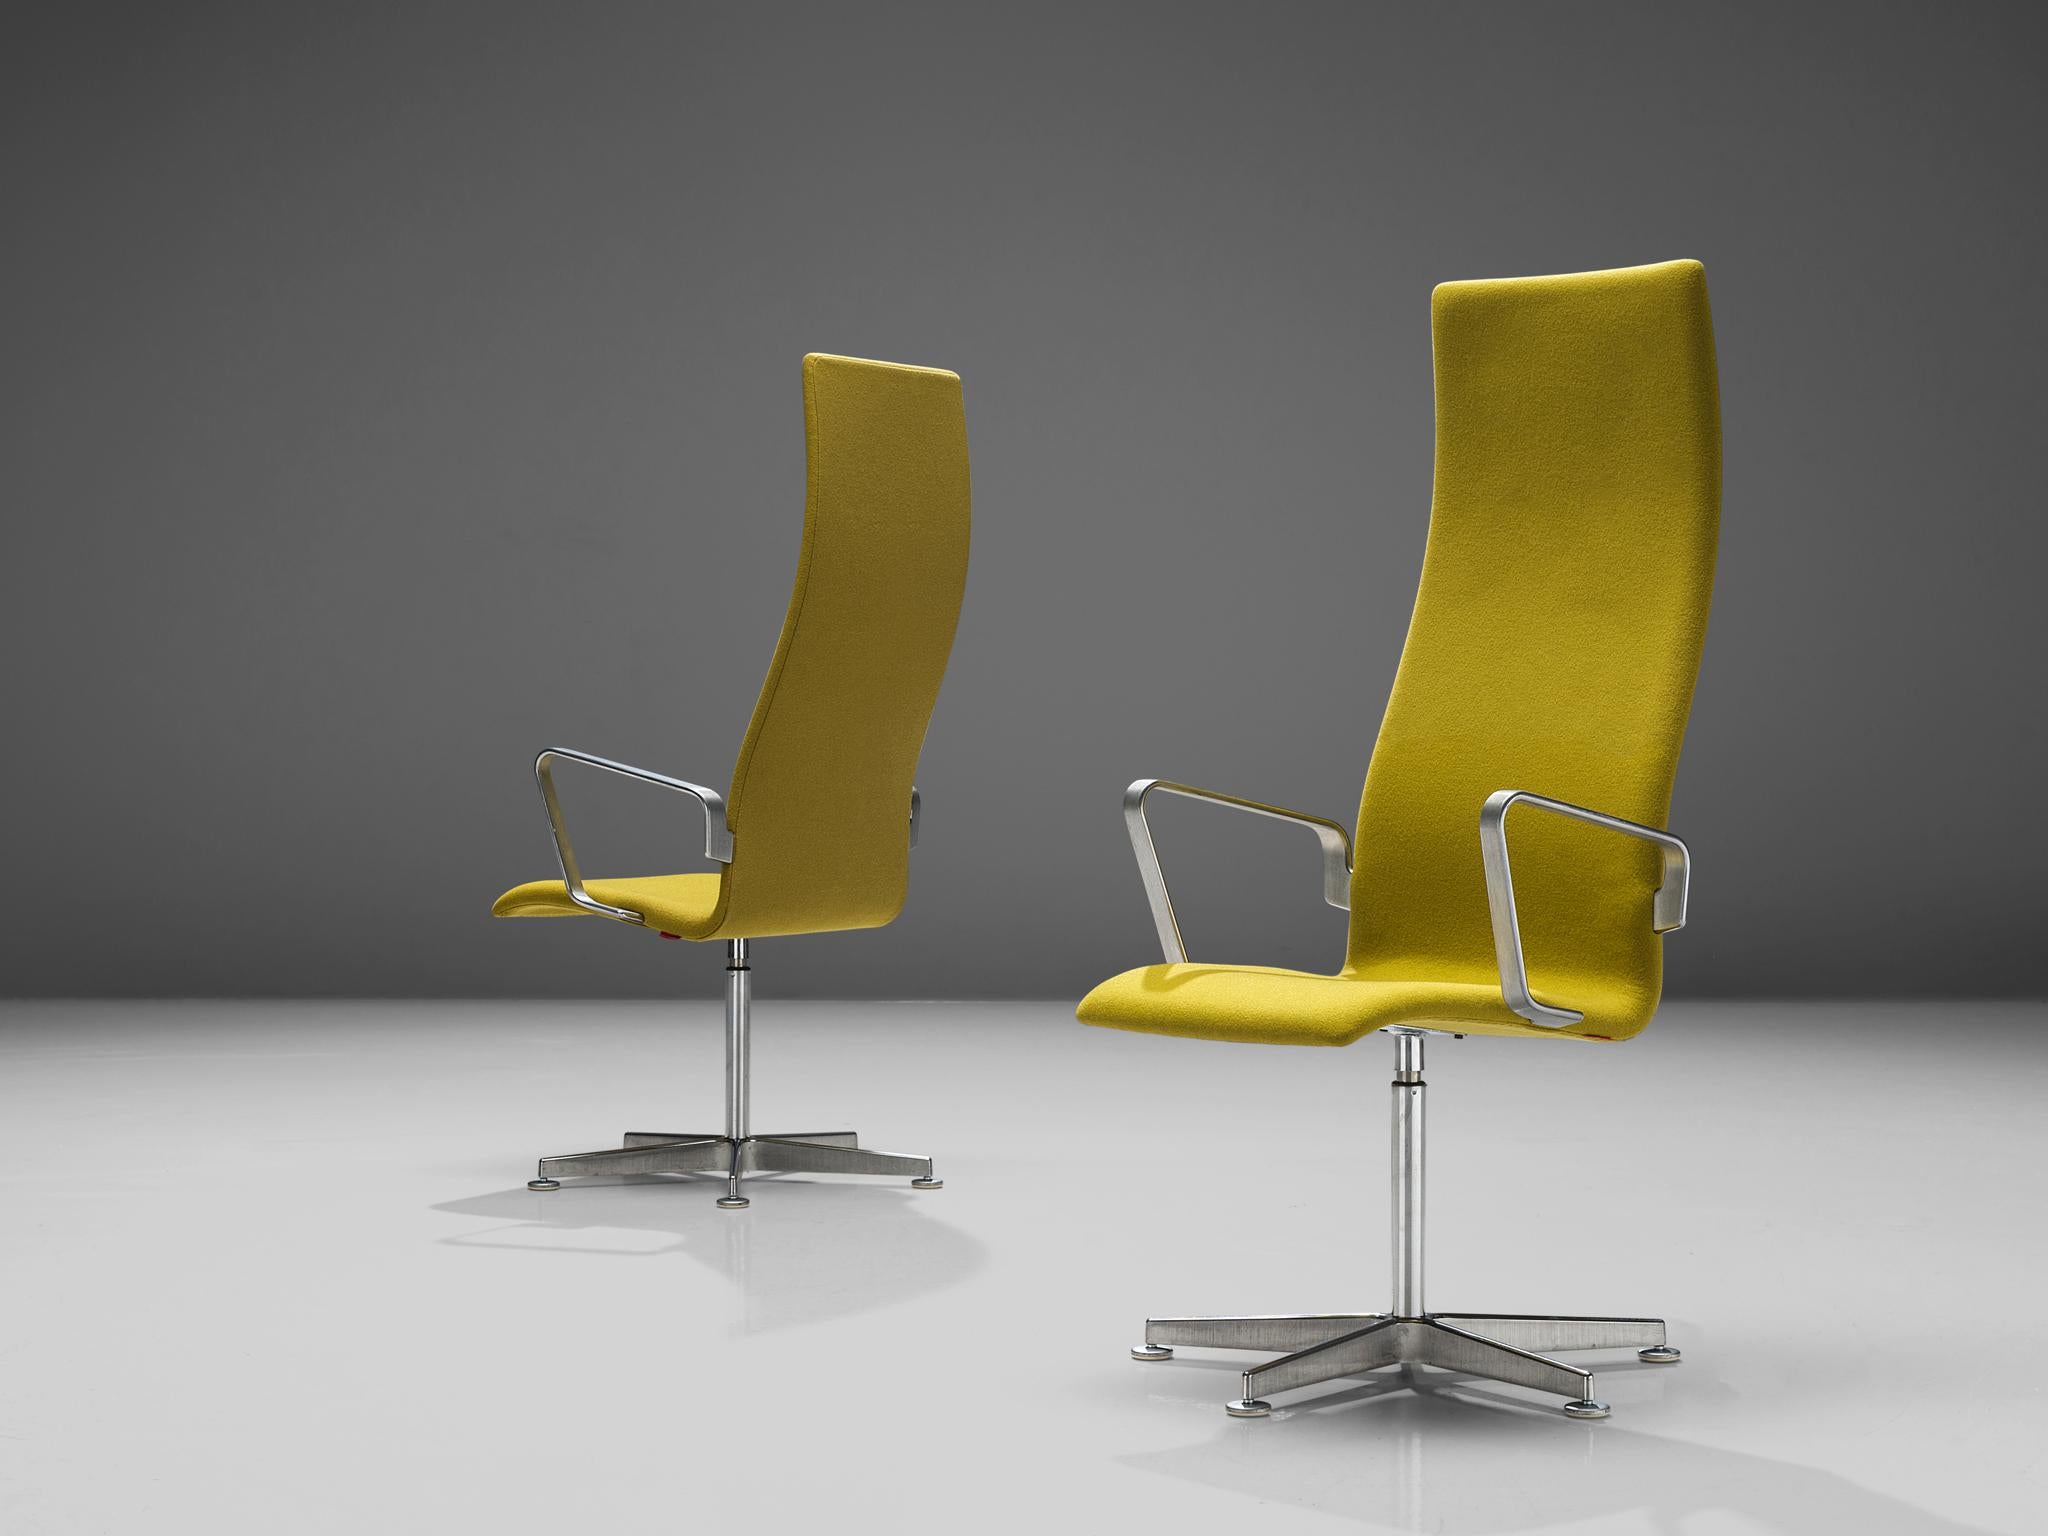 Arne Jacobsen pour Hansen, paire de chaises de bureau 'Oxford' modèle 3272, aluminium, bois, tissu d'ameublement, Royaume-Uni, design 1965, production récente

La version originale de la chaise 